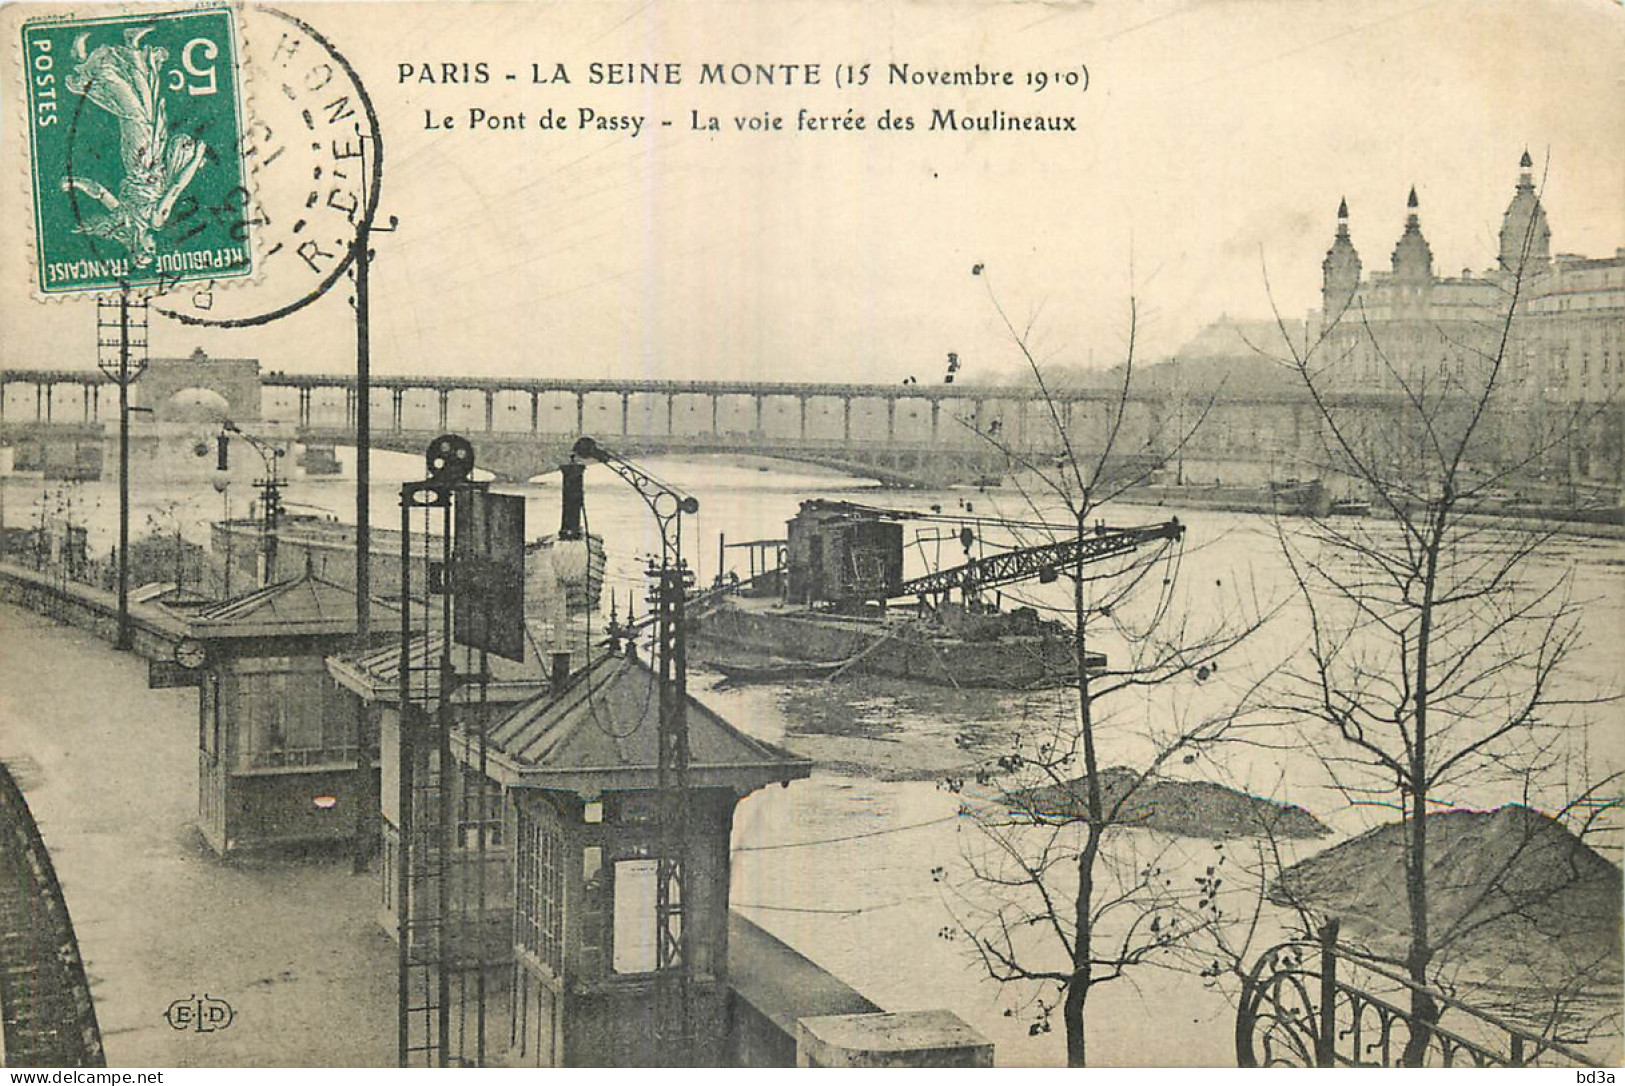 75 - PARIS - LA SEINE MONTE - LE PONT DE PASSY - Paris Flood, 1910